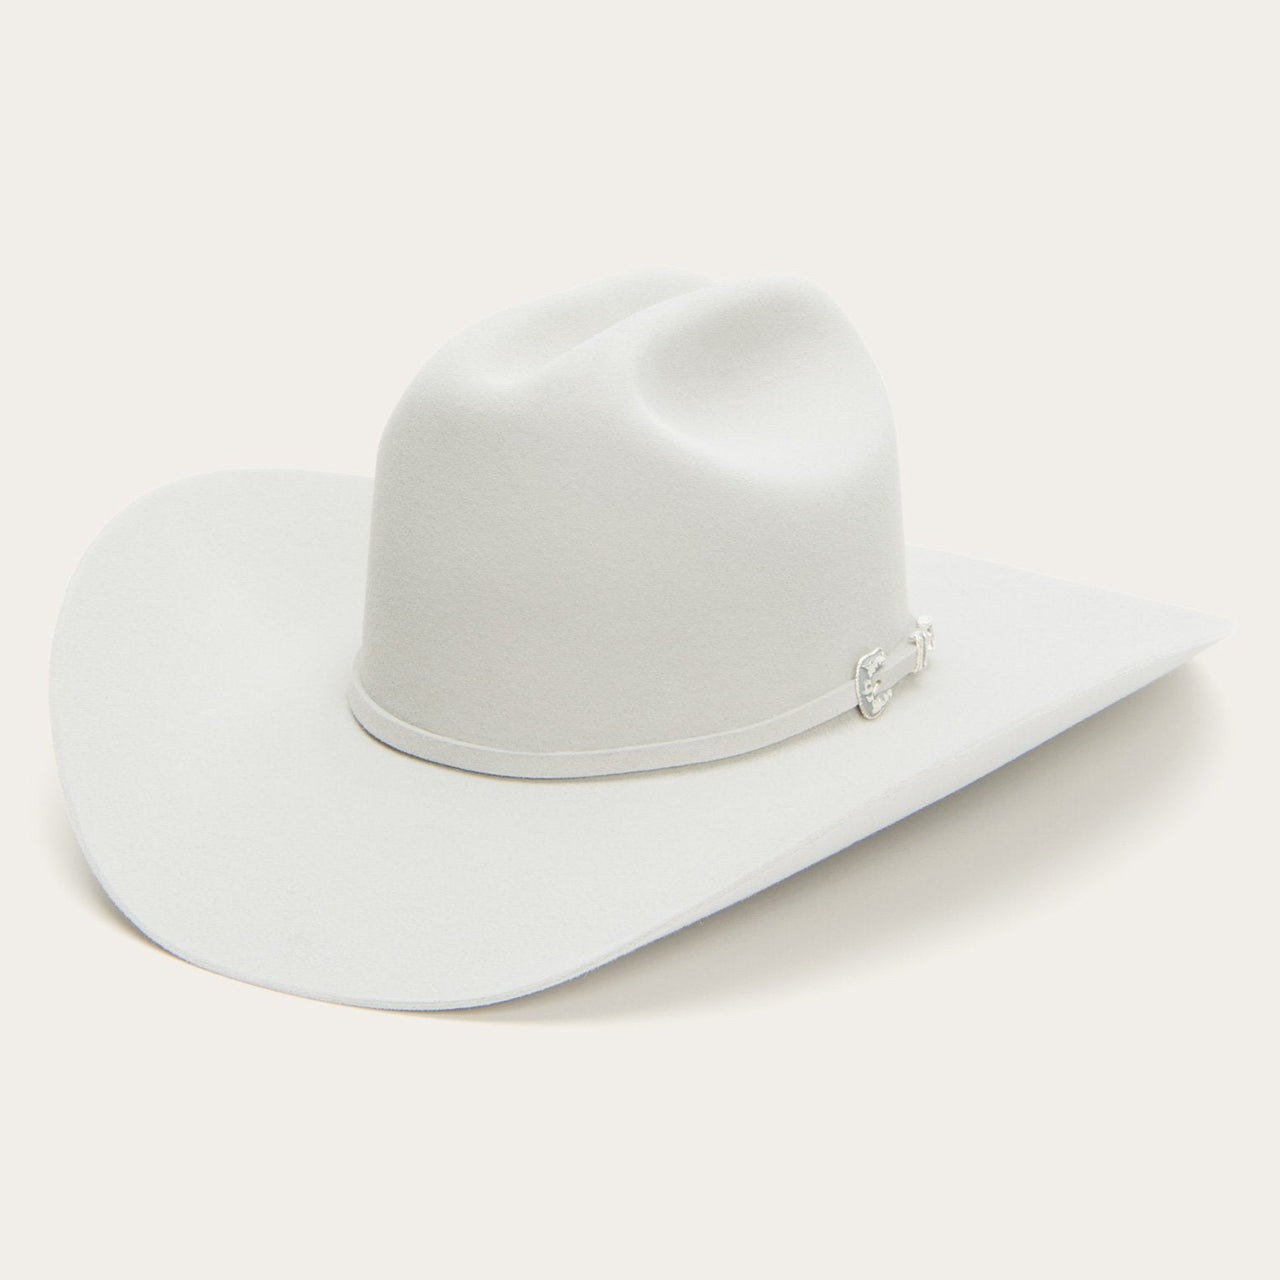 6x Stetson Skyline Fur Felt Cowboy Hat Silver Gray